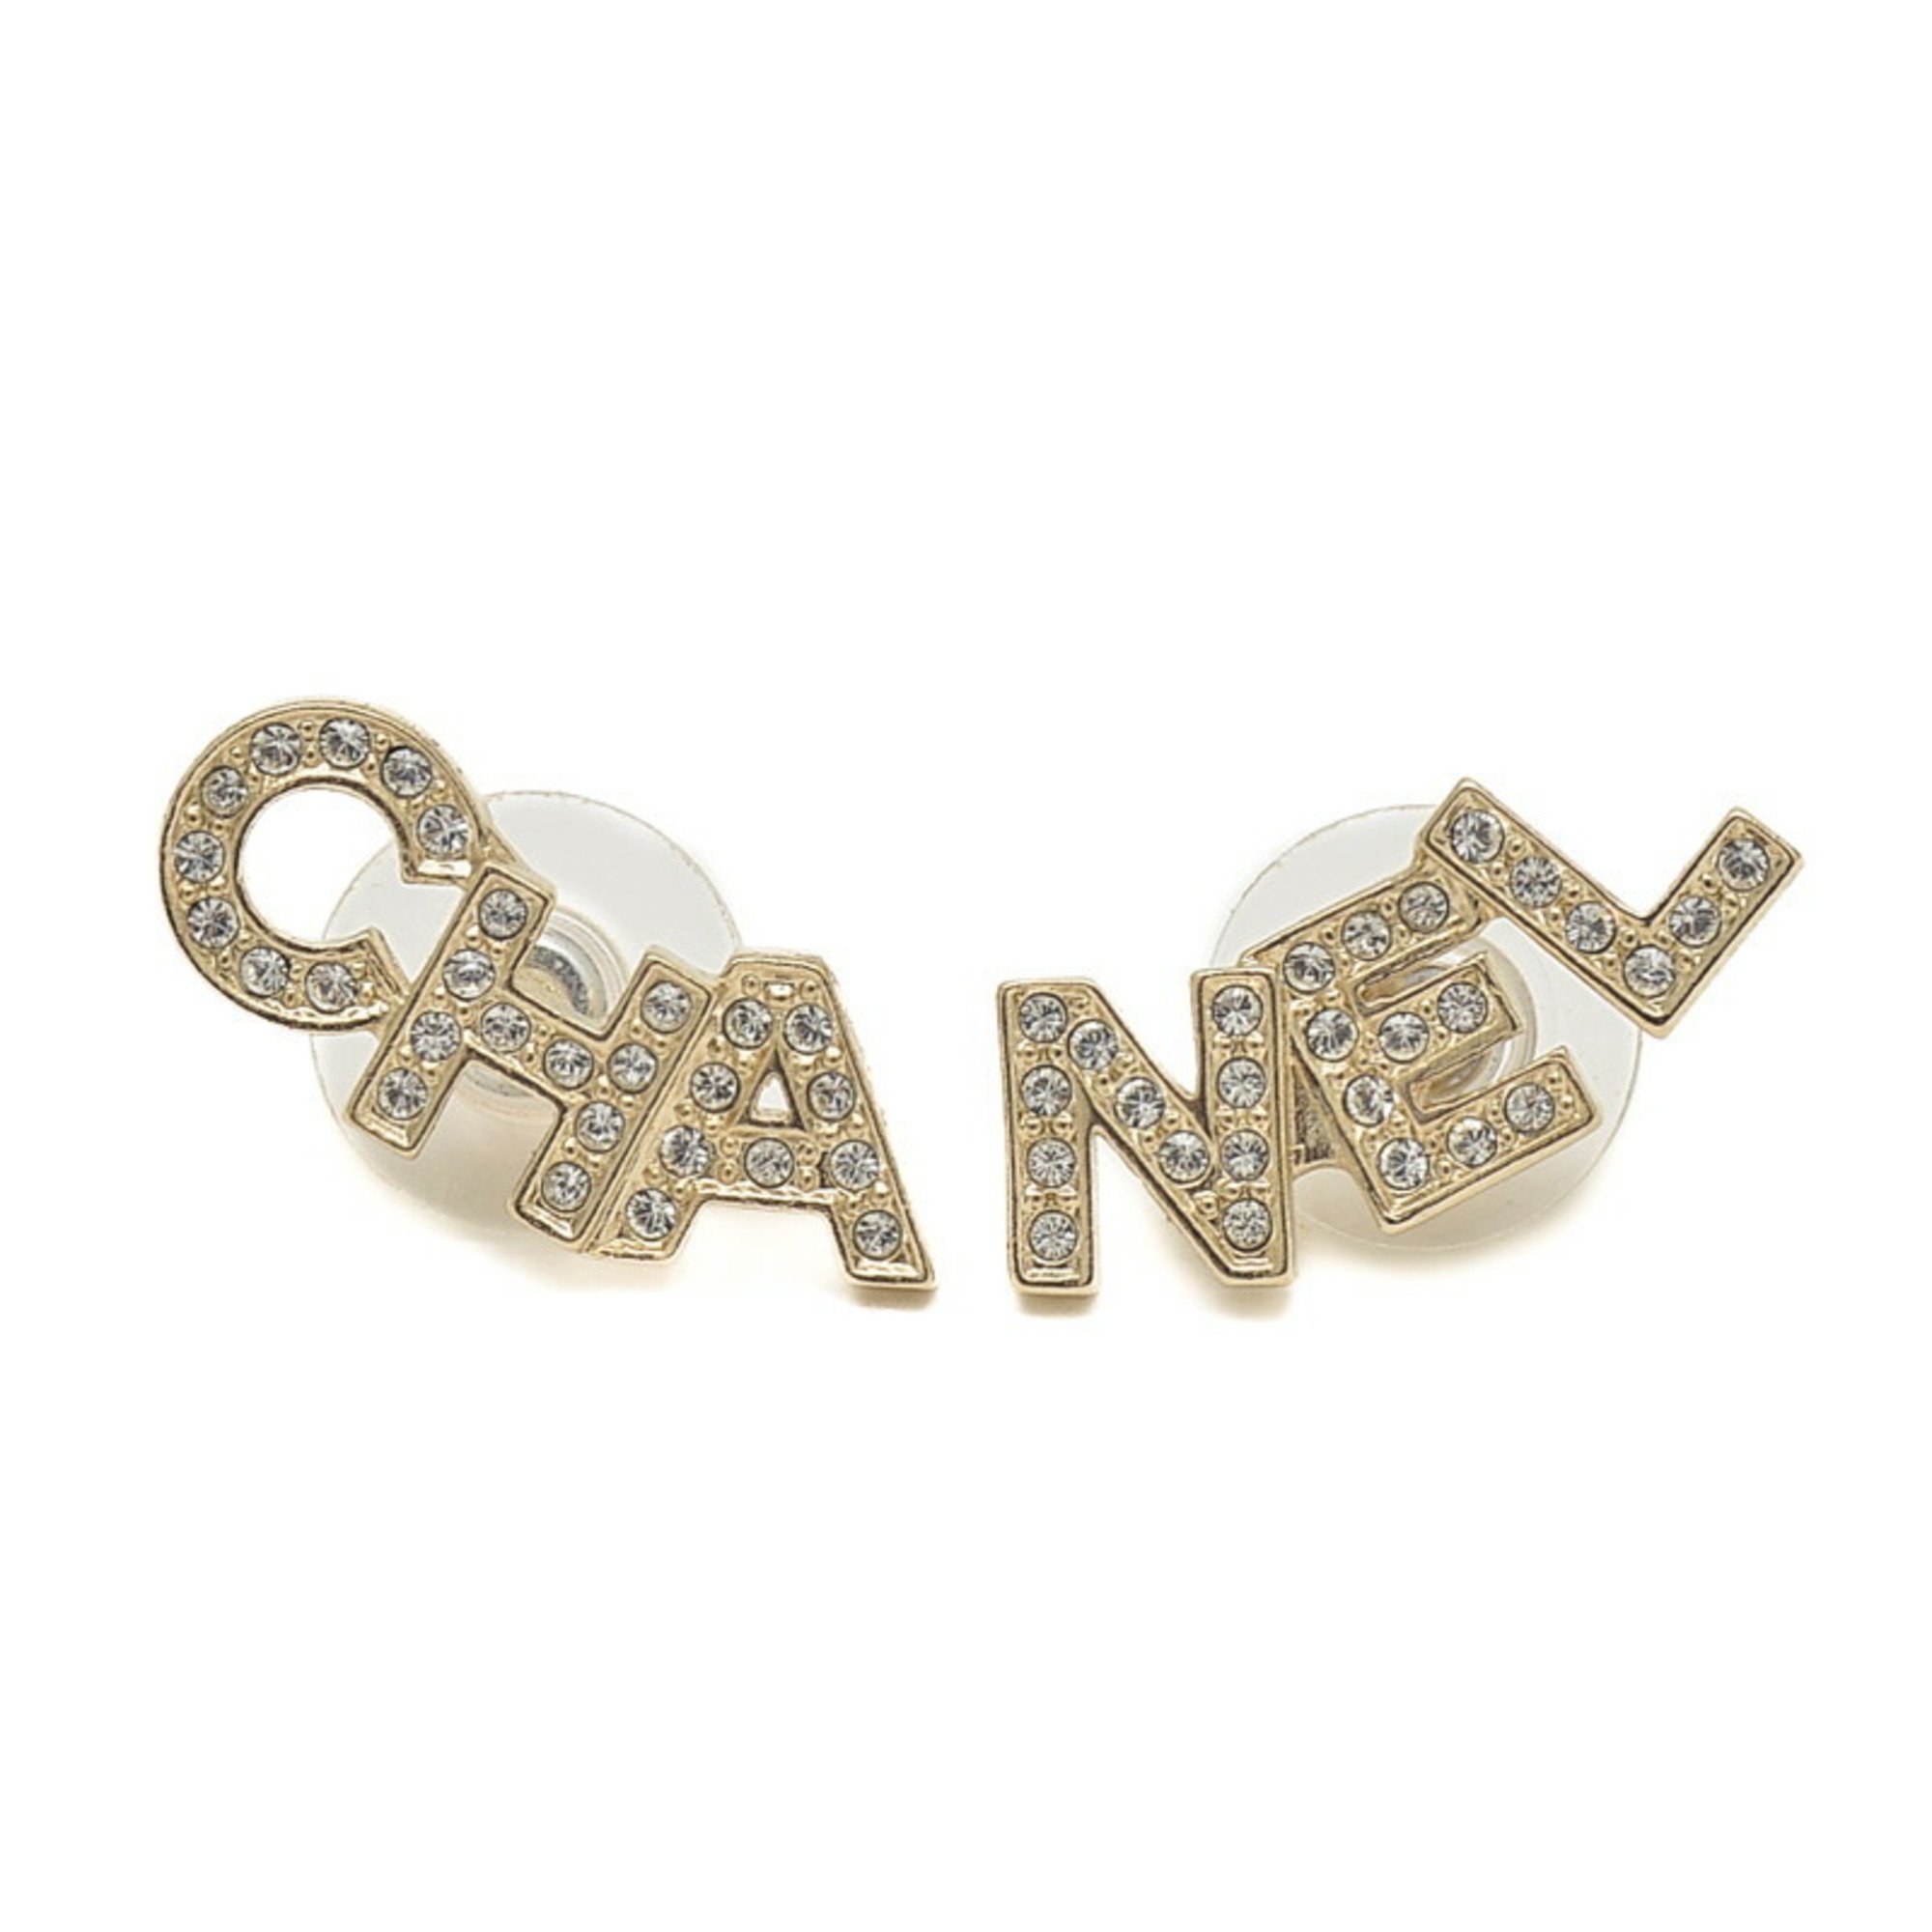 Chanel Rhinestone Earrings Champagne Gold A20B